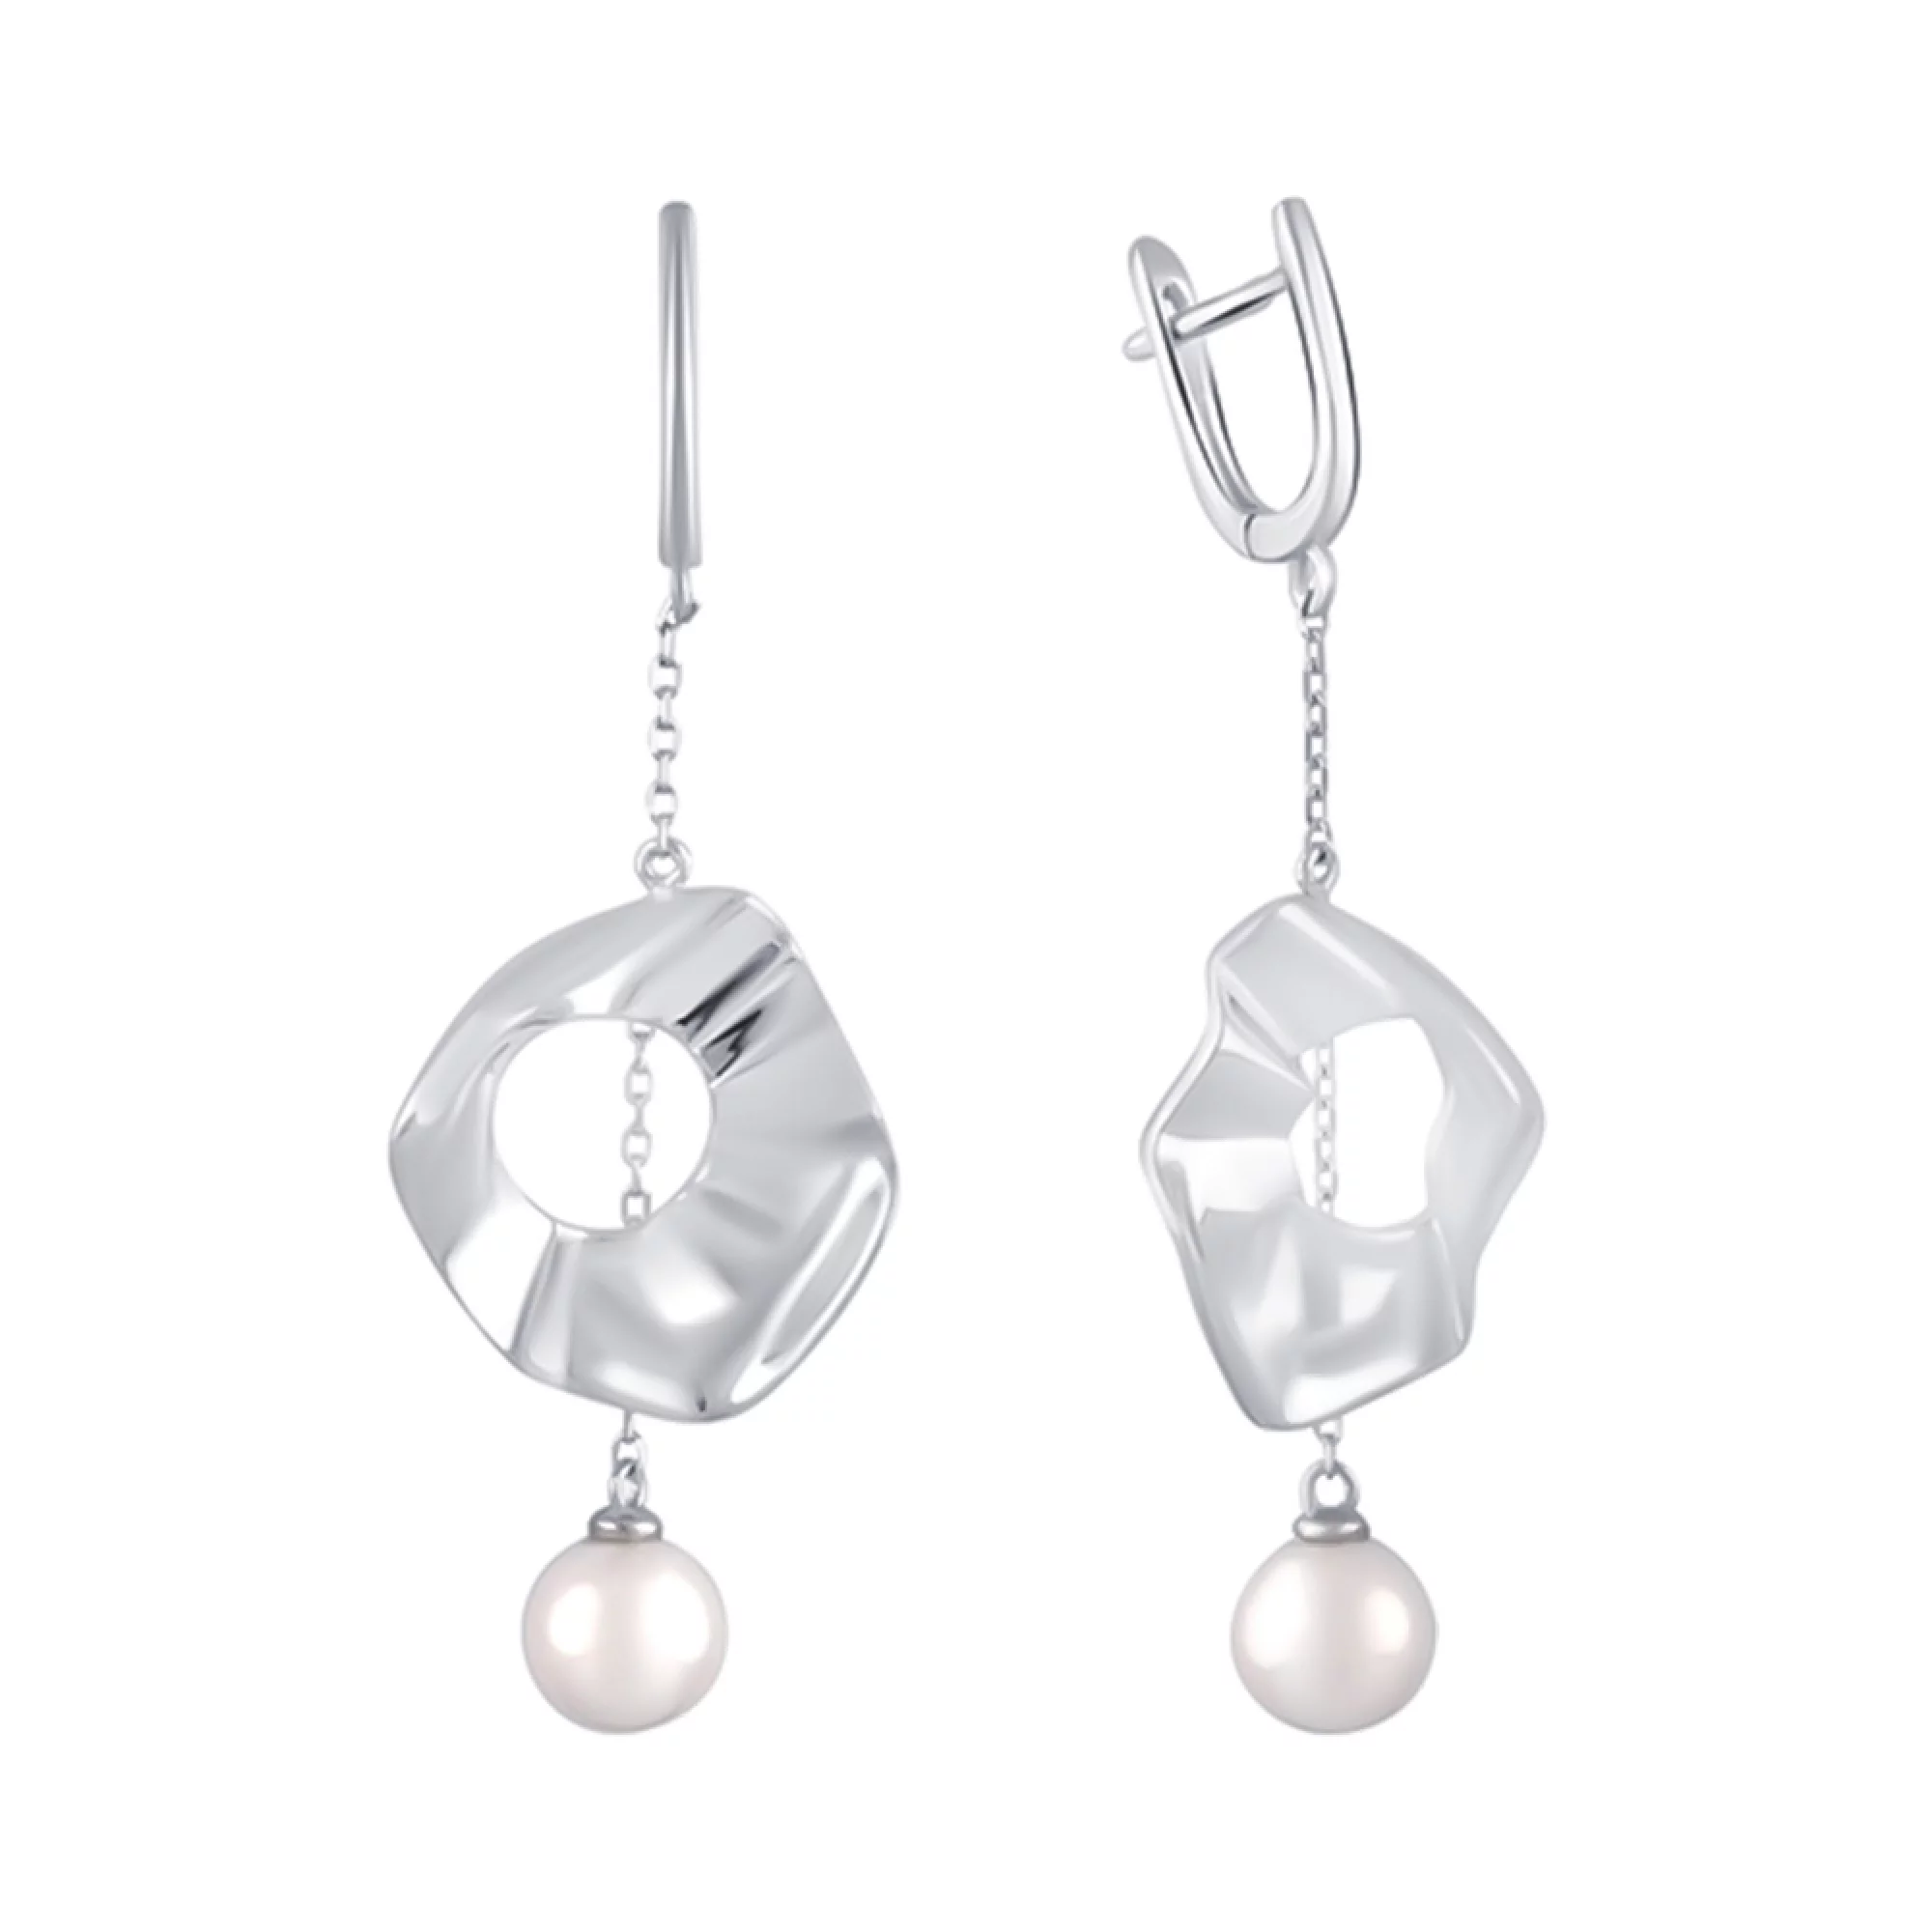 Сережки зі срібла з підвісками з перлинами - 1483958 – зображення 1